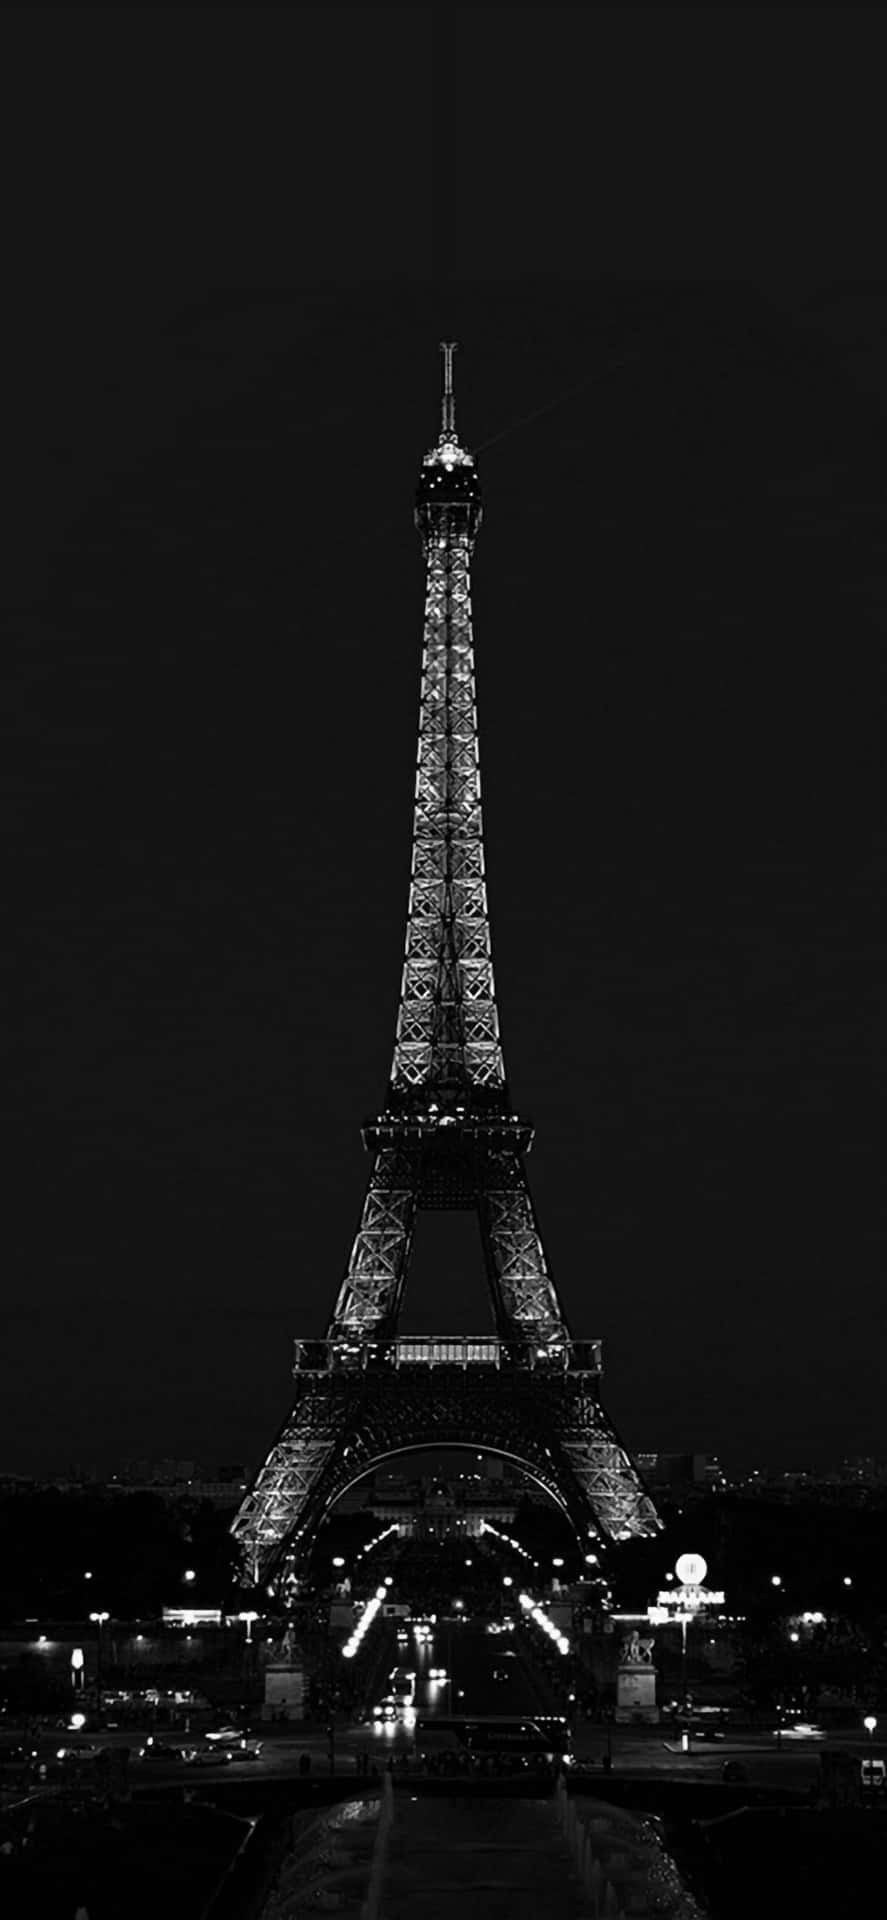 Bilddes Eiffelturms Bei Dunklem Himmel